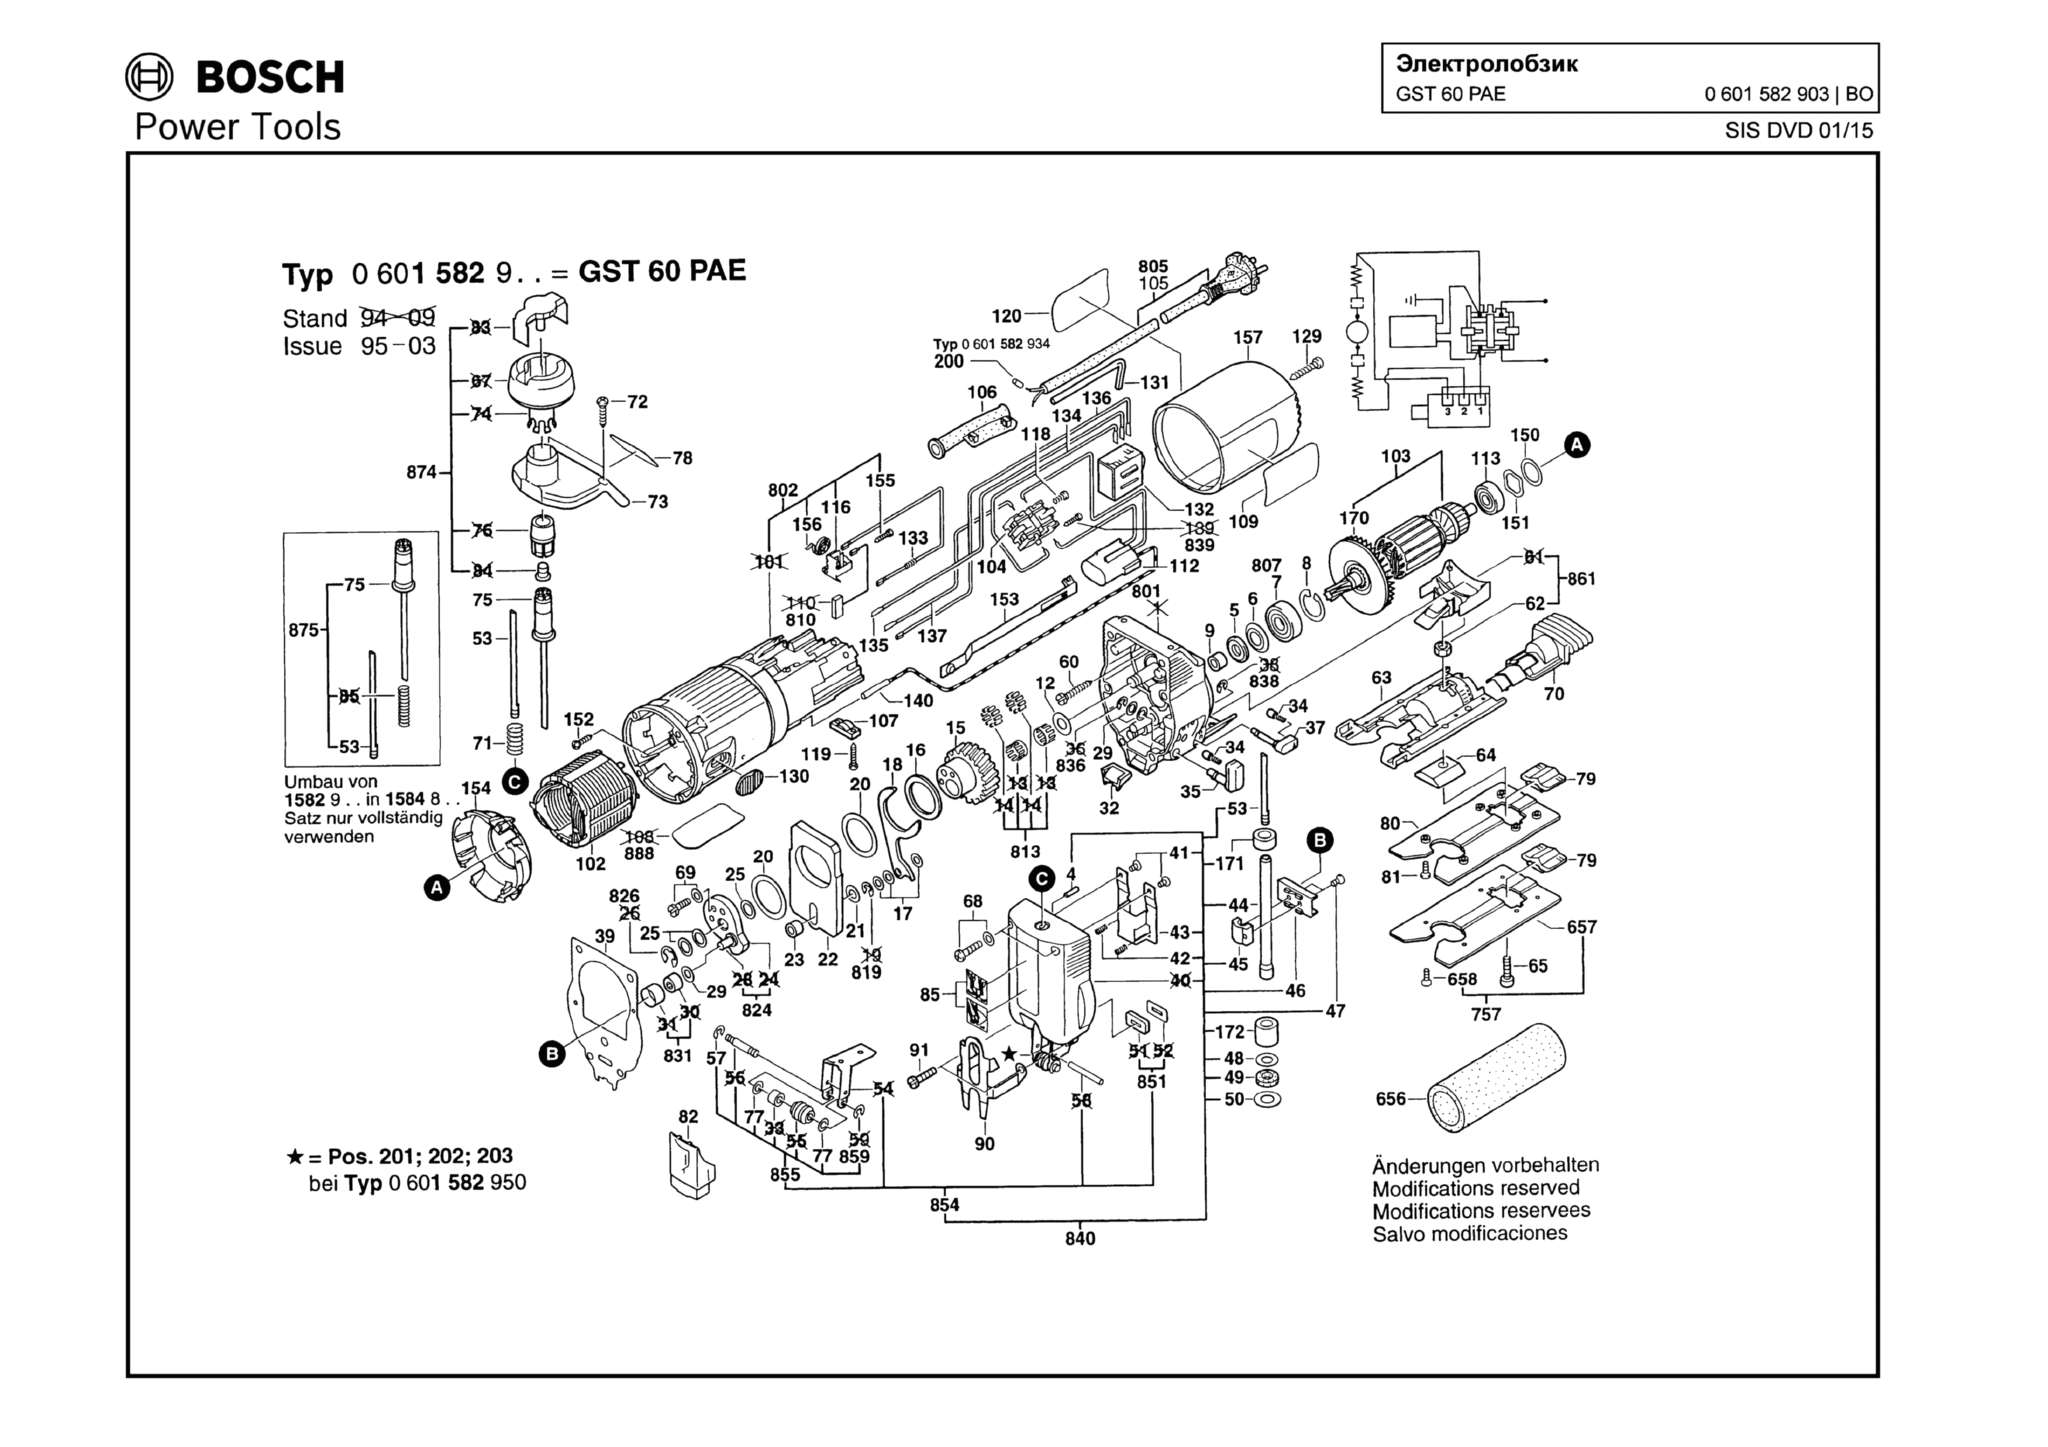 Запчасти, схема и деталировка Bosch GST 60 PAE (ТИП 0601582903)